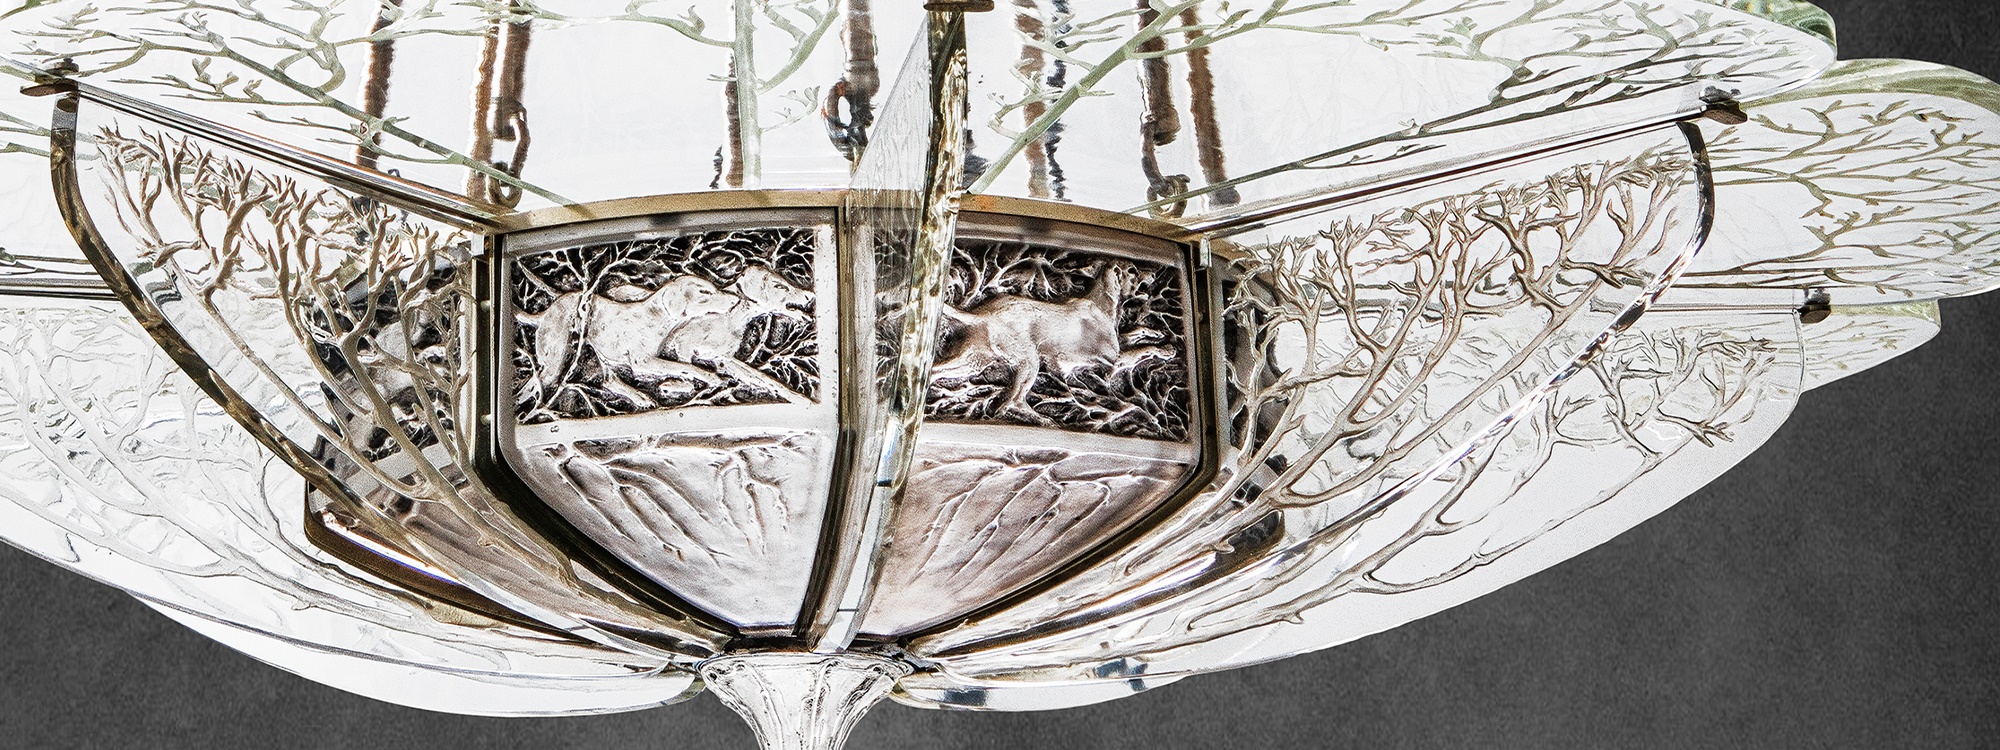 Lalique's 'La Chasse' Chandelier